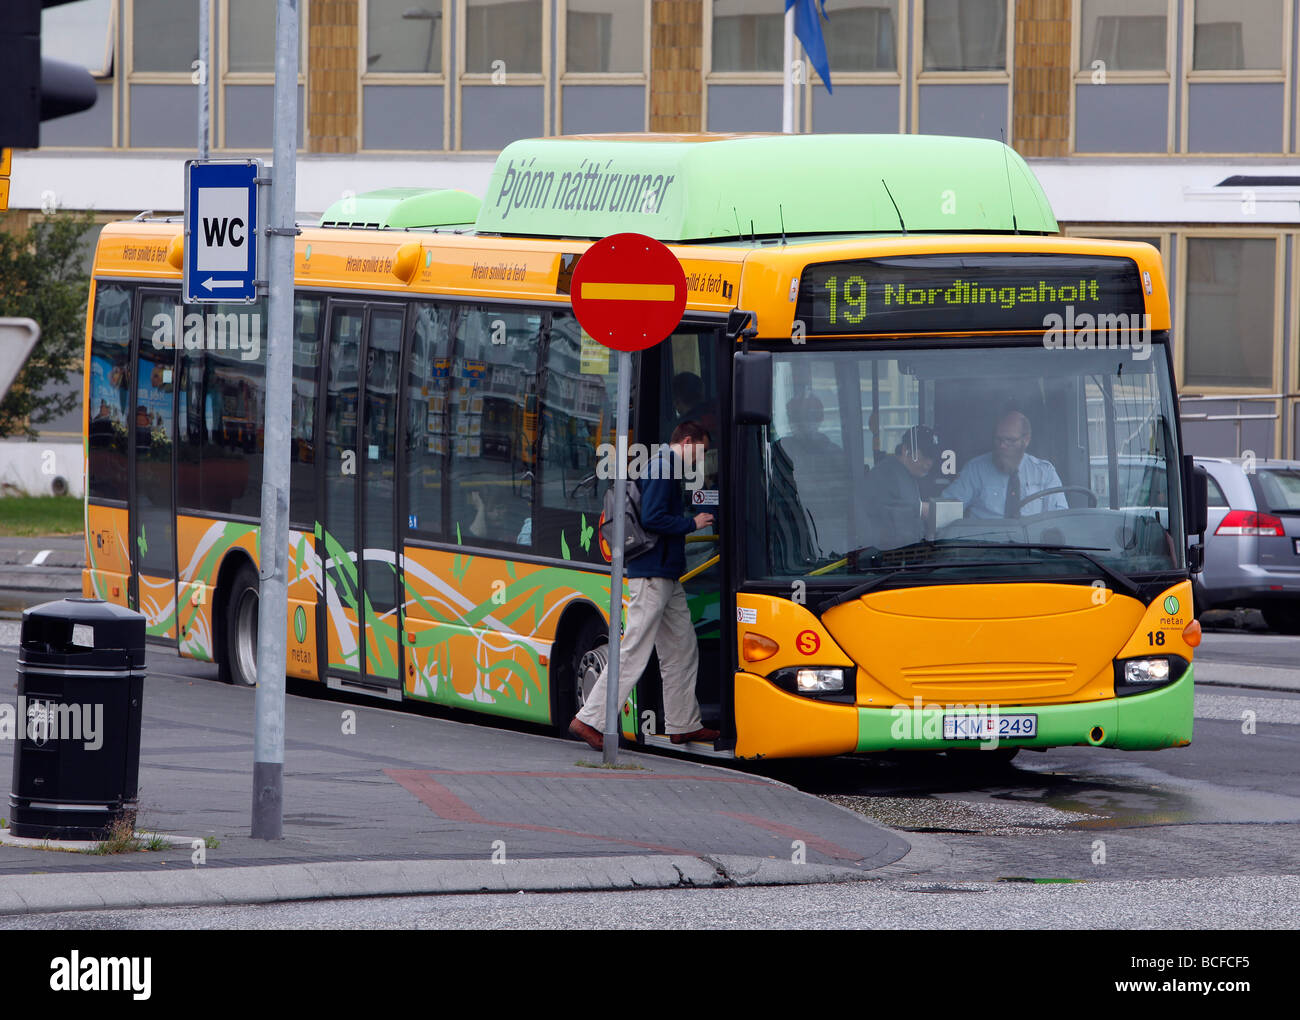 City bus, Reykjavík, Iceland Stock Photo